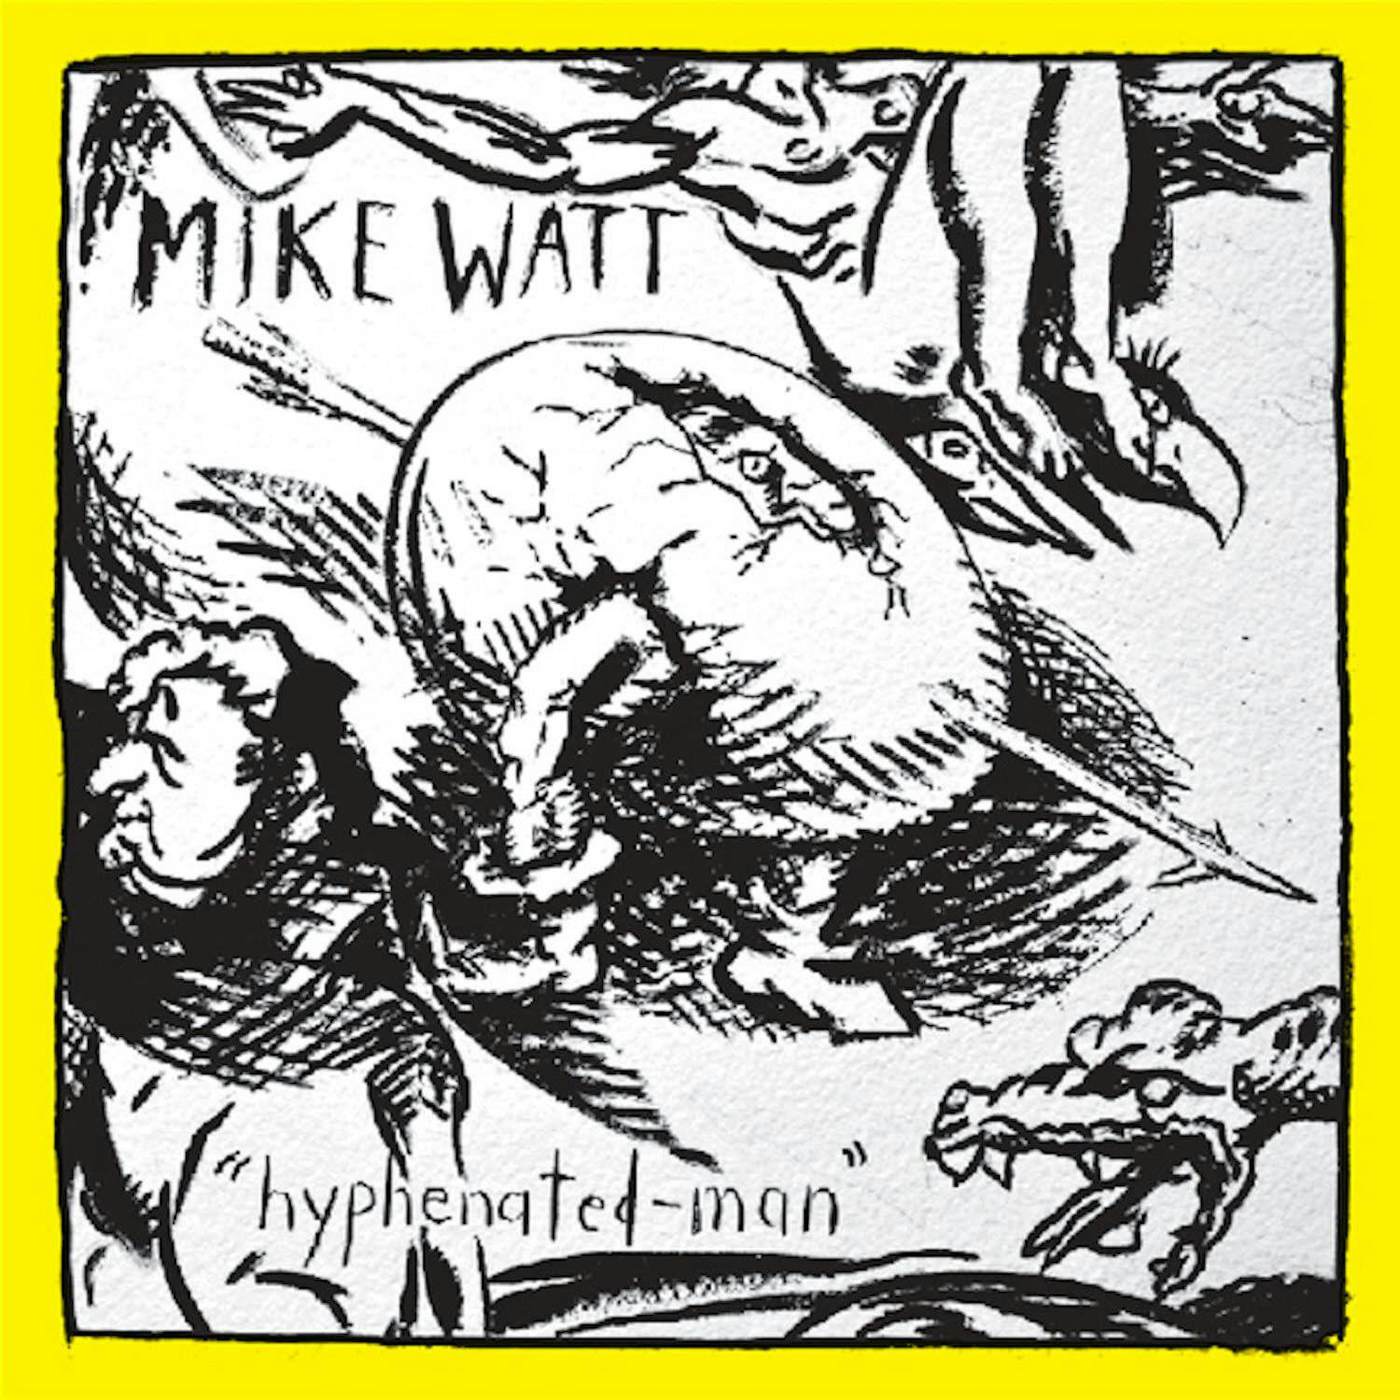 Mike Watt Hyphenated-man (Yellow Vinyl Record) 